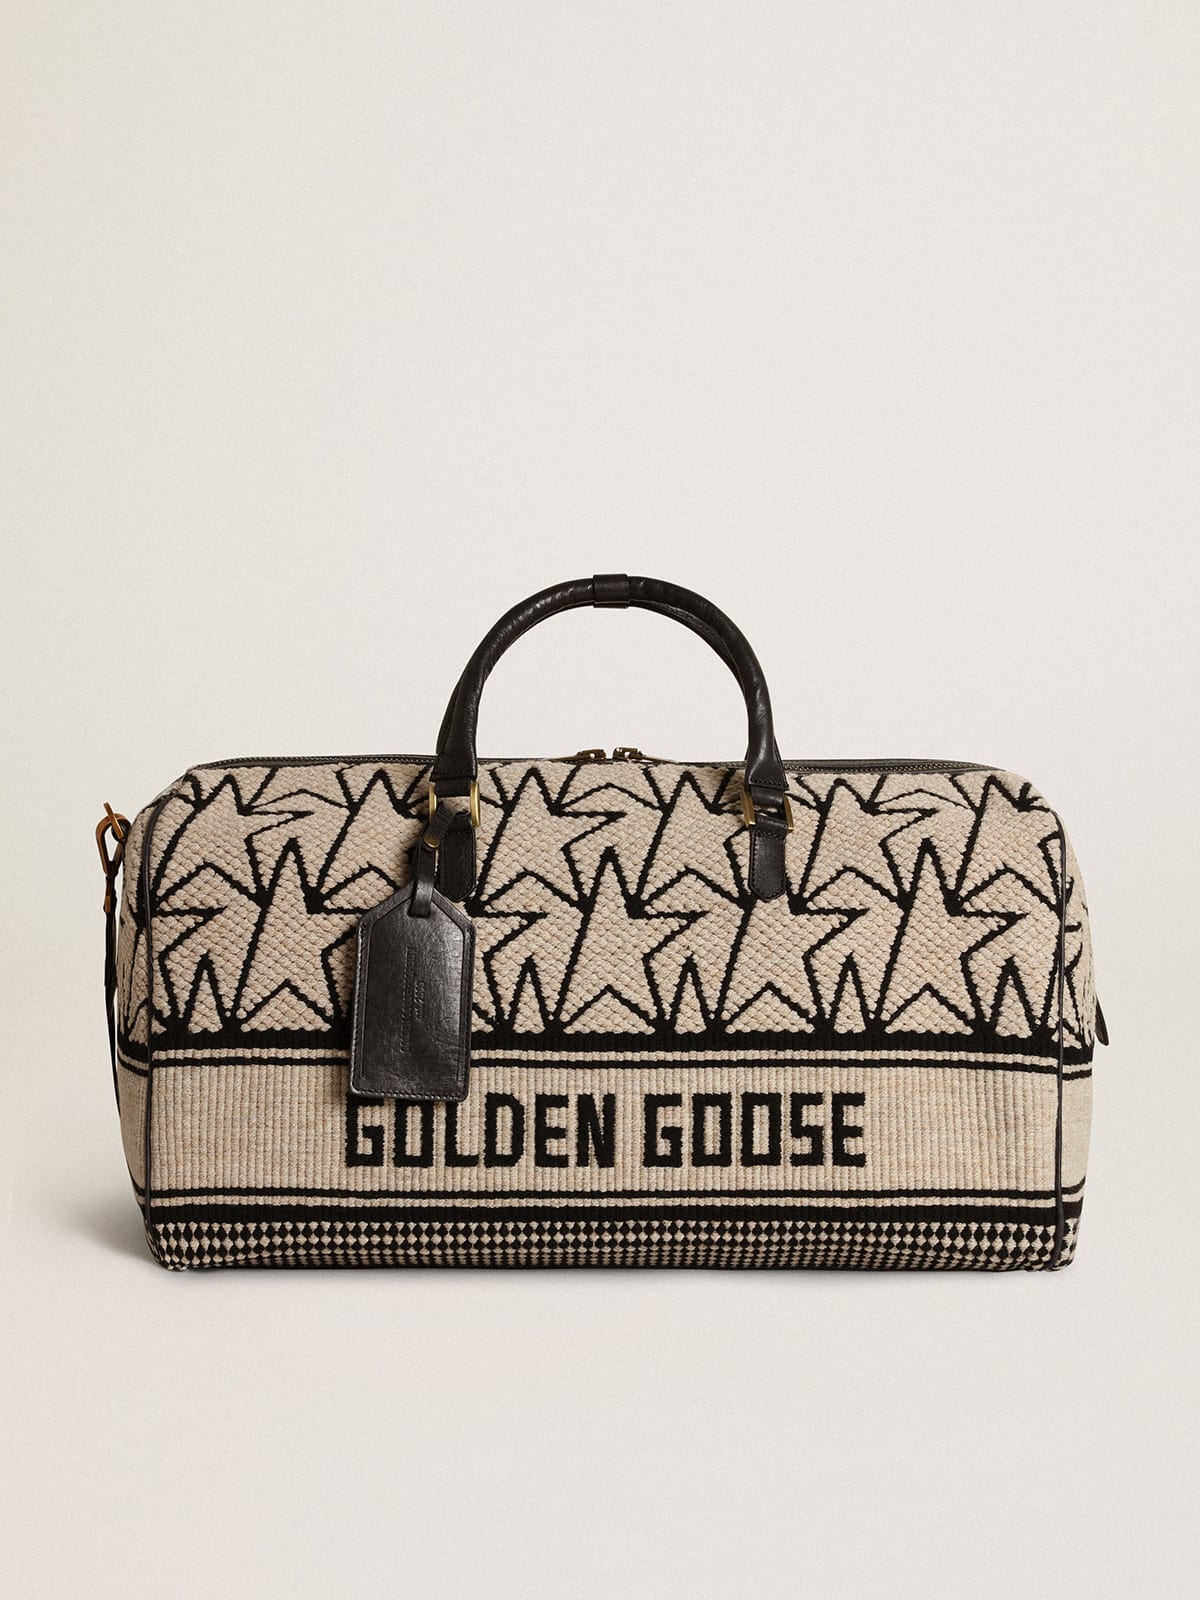 Golden Goose - Duffle bag in lana jacquard color bianco latte con monogrammi e scritta Golden Goose di colore nero a contrasto in 